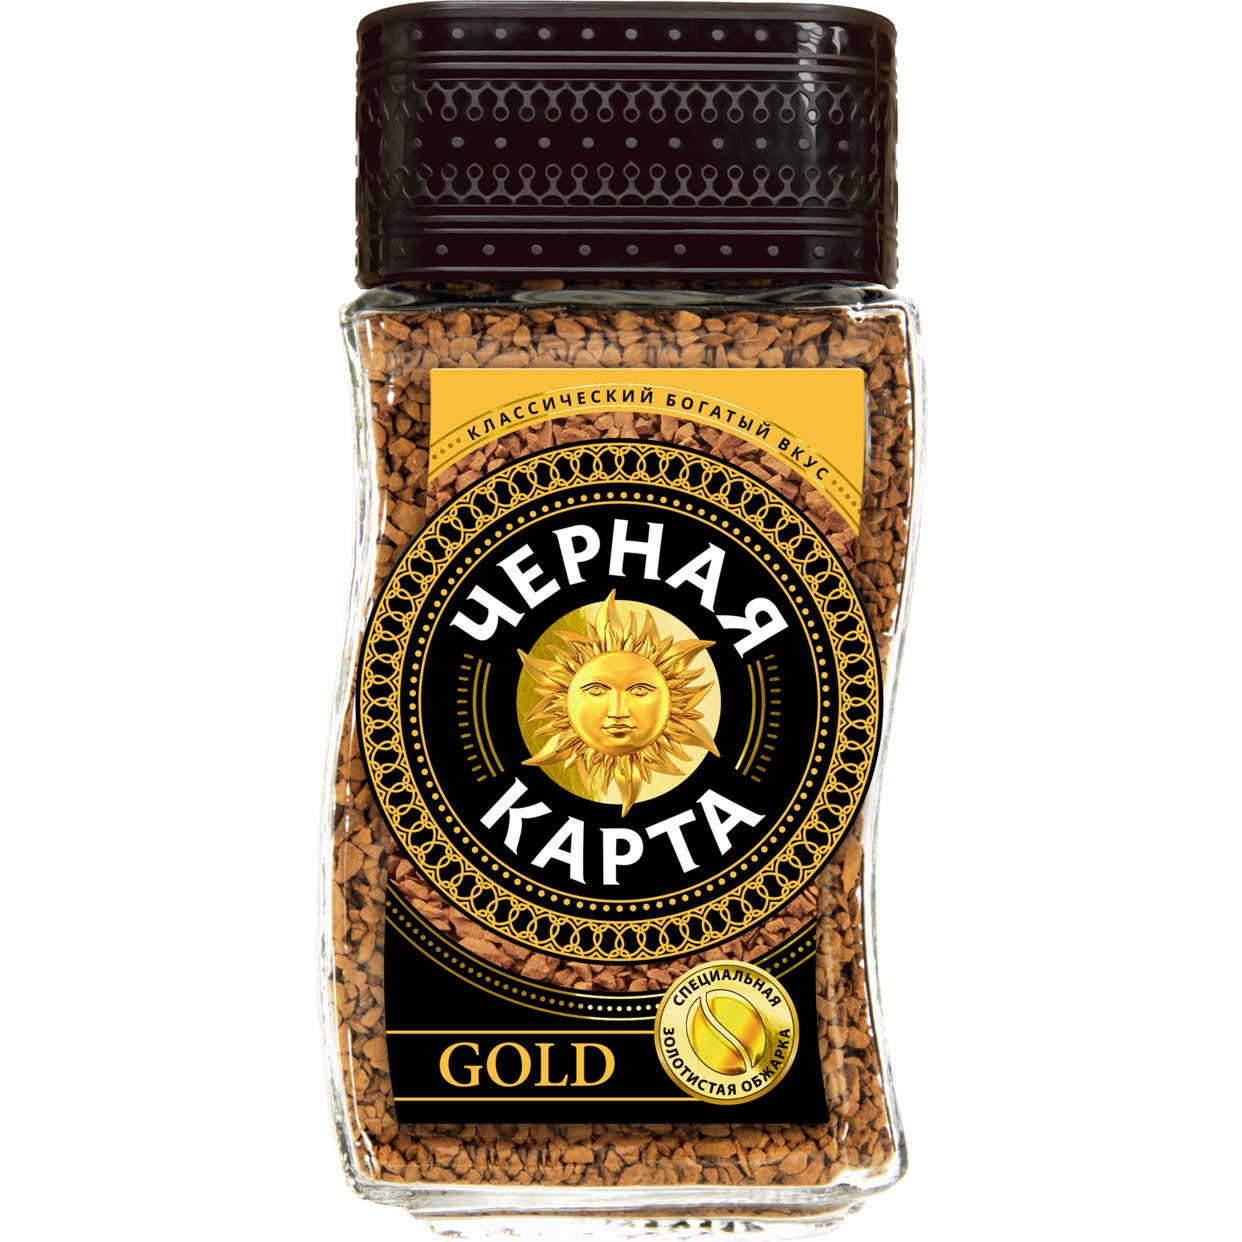 Кофе Черная Карта, Gold, растворимый, 95 г